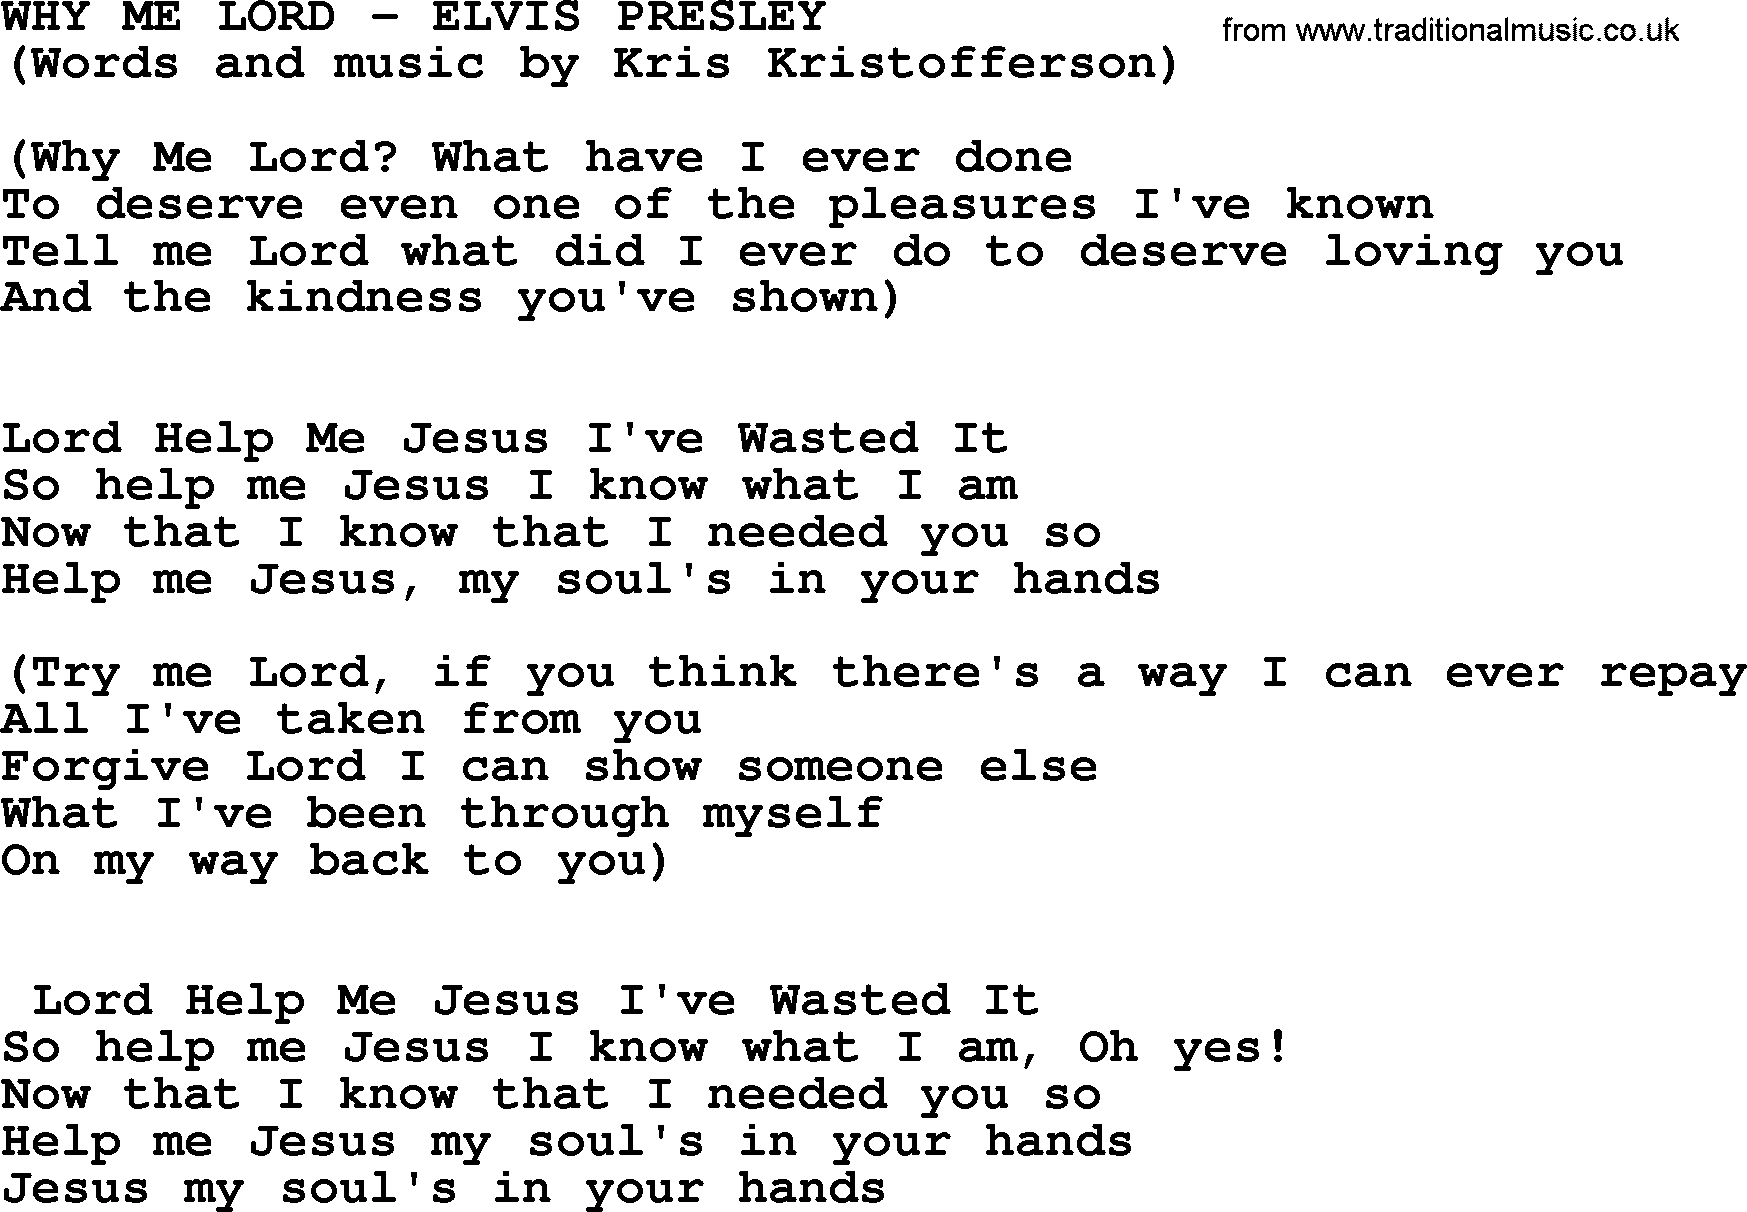 Elvis Presley song: Why Me Lord lyrics